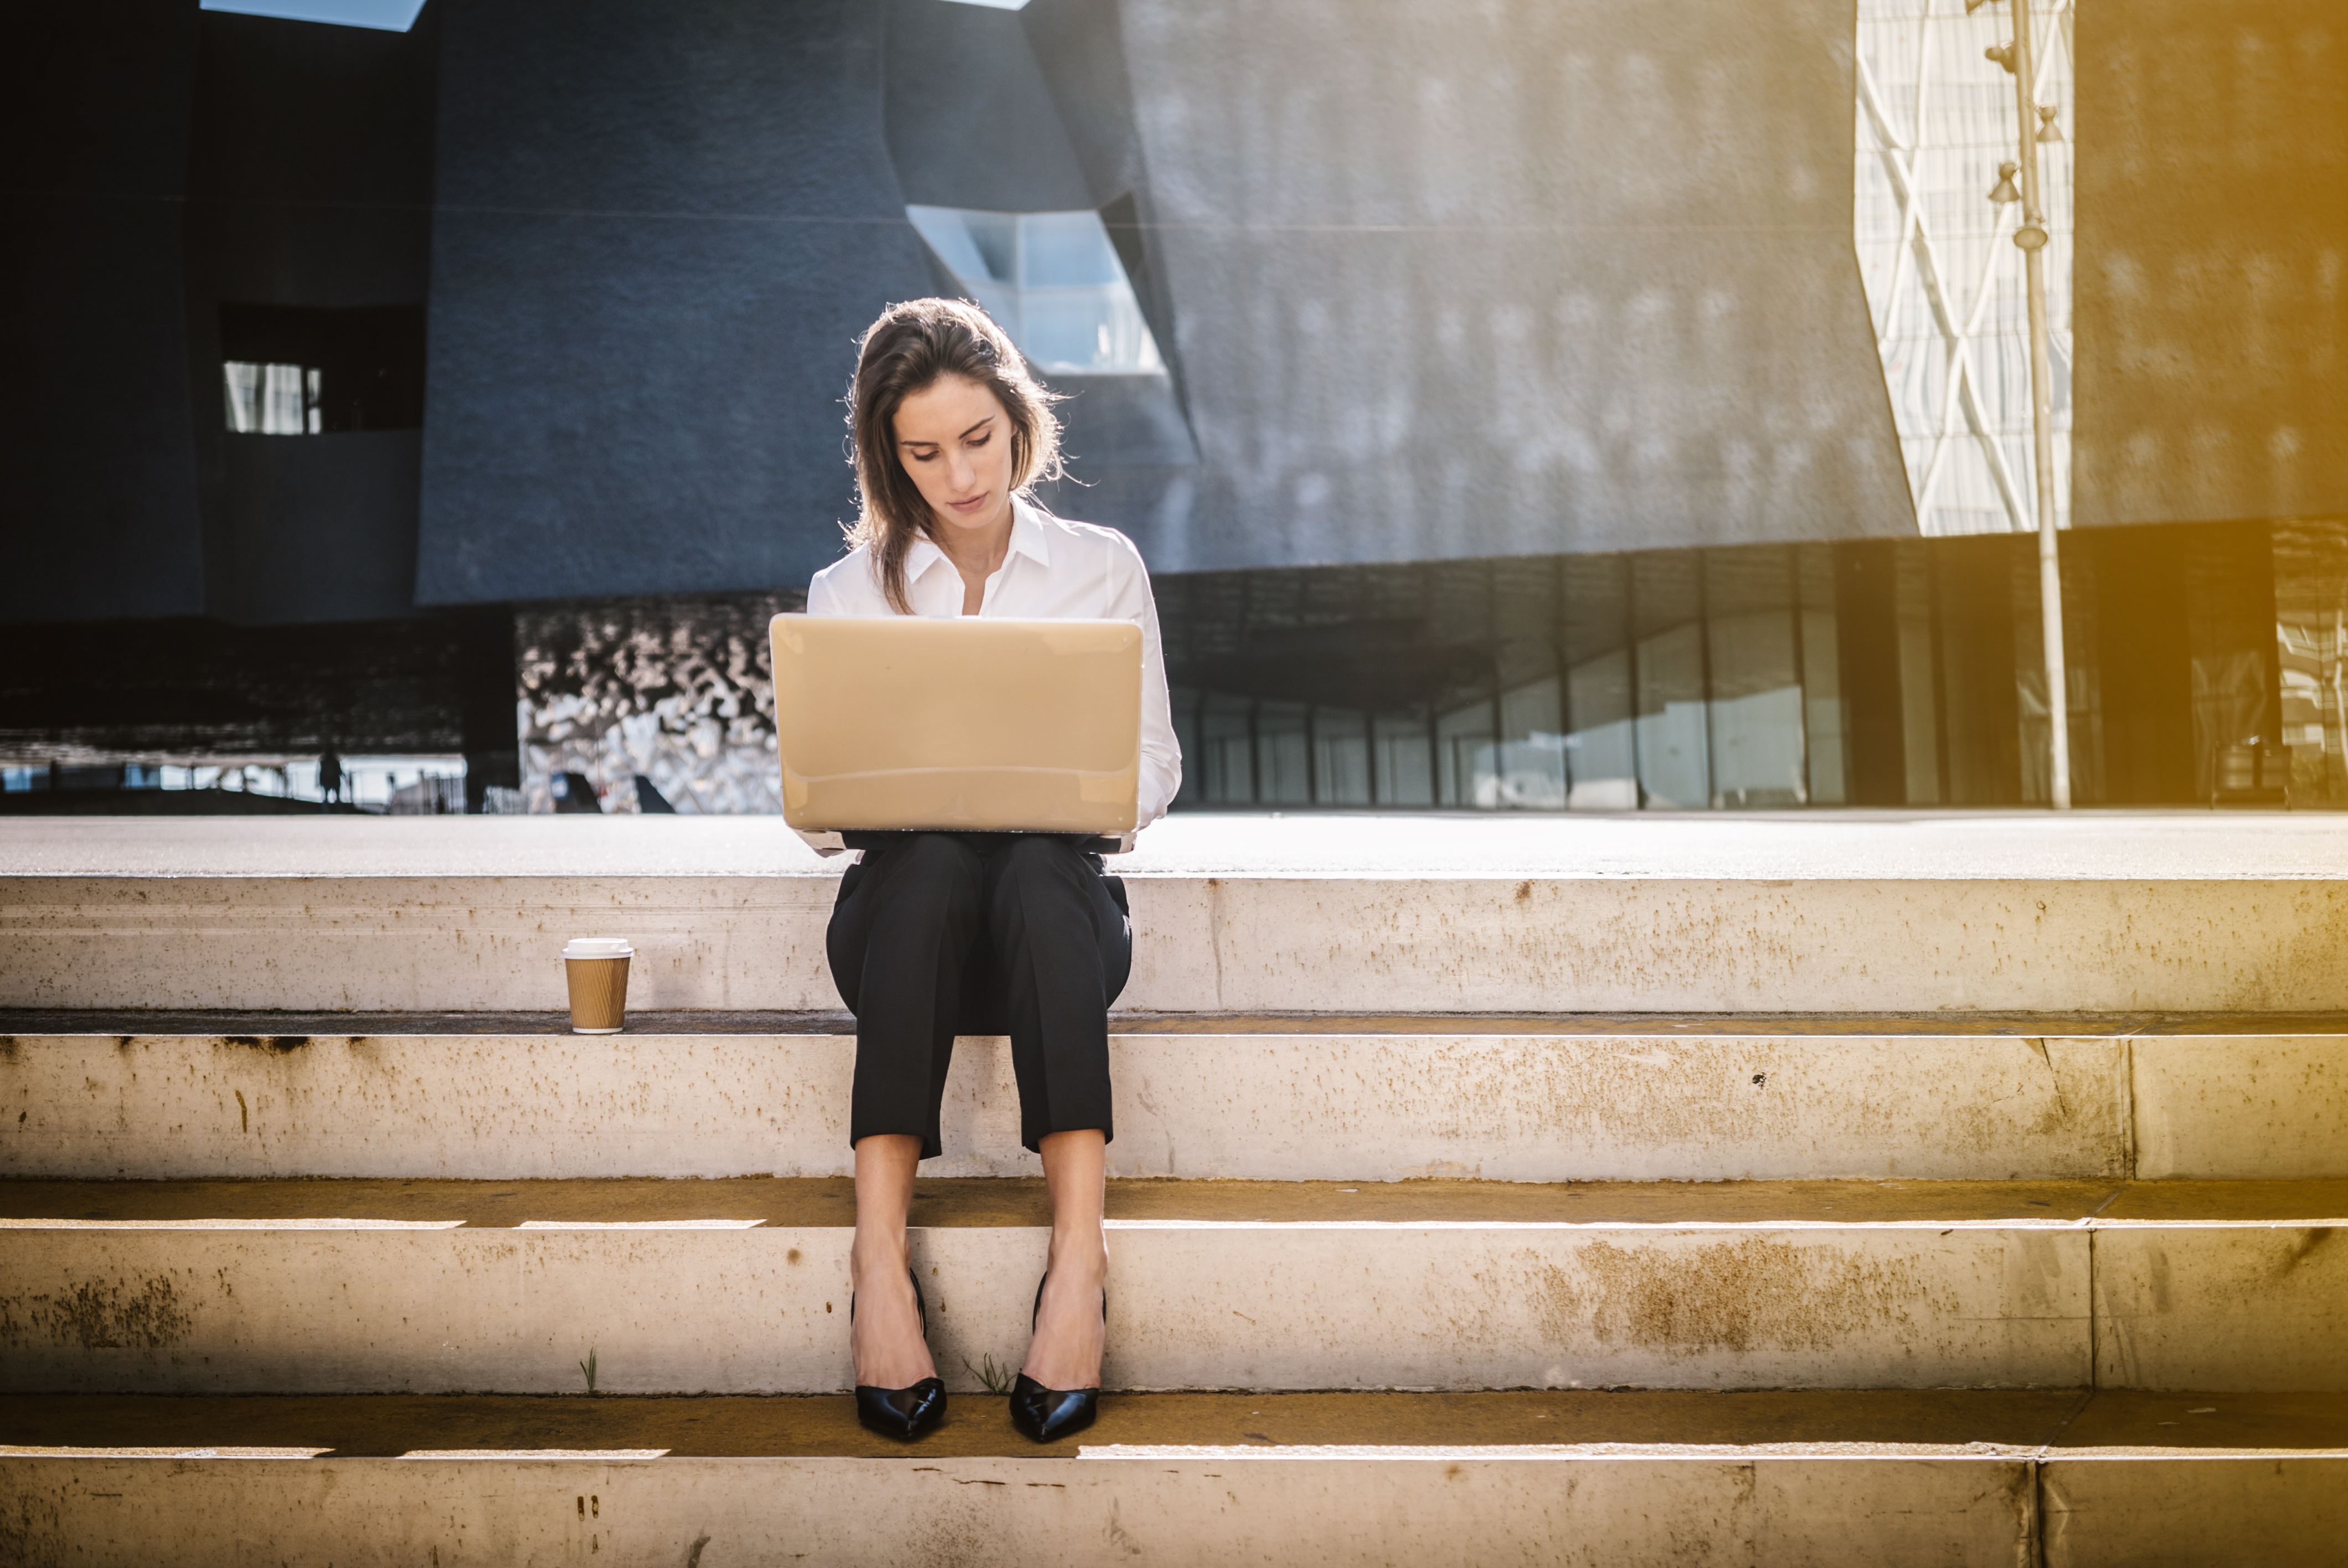 Een vrouw zit op een trap met haar laptop op schoot. Naast haar staat een kopje koffie.